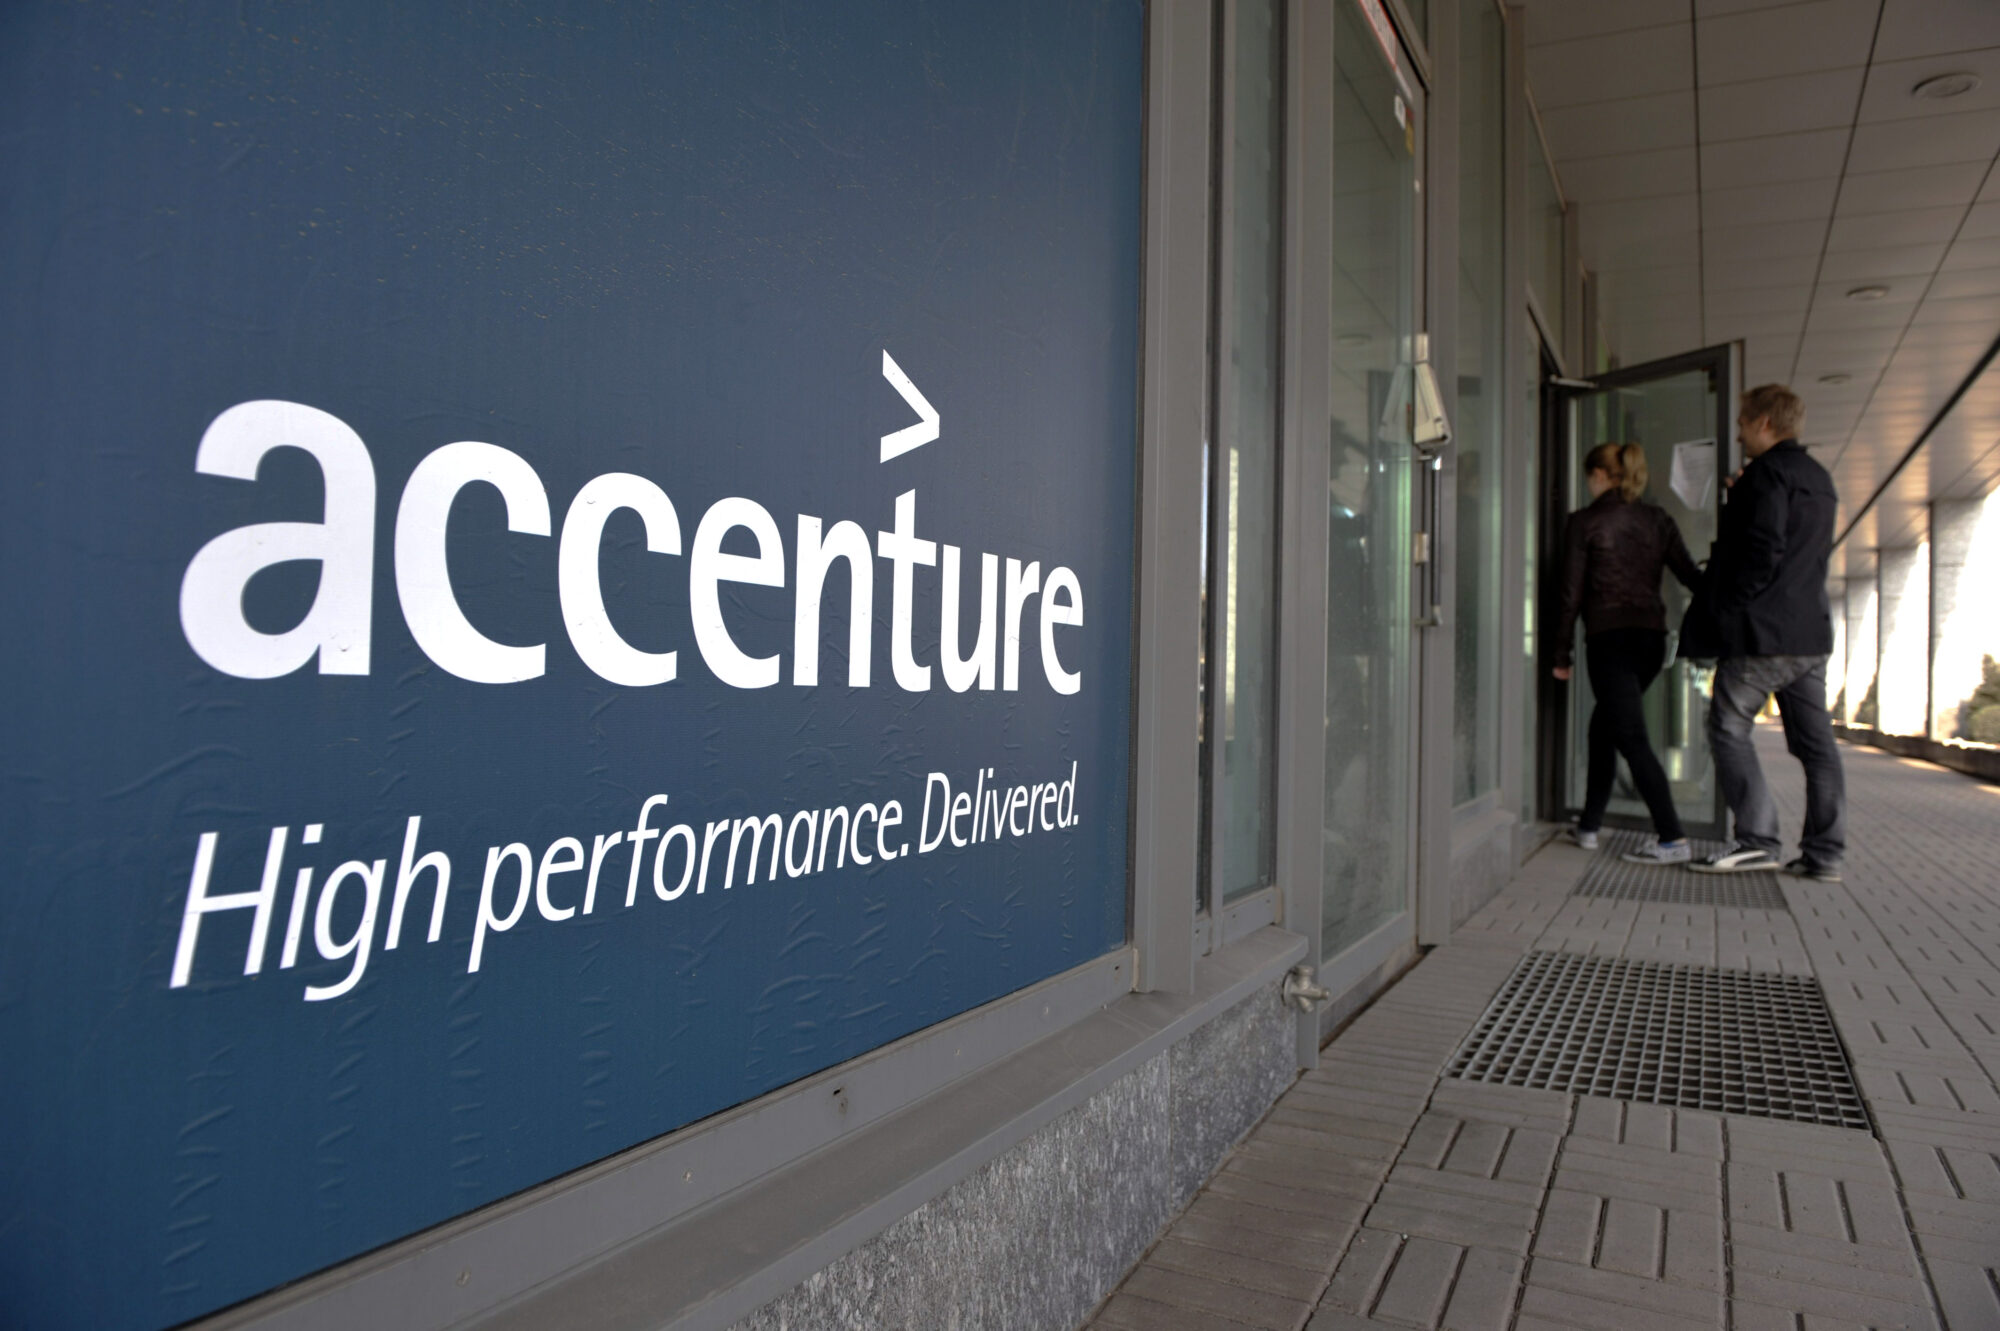 Specsavers väljer Accenture som IT-partner i omställningen mot en digital framtid